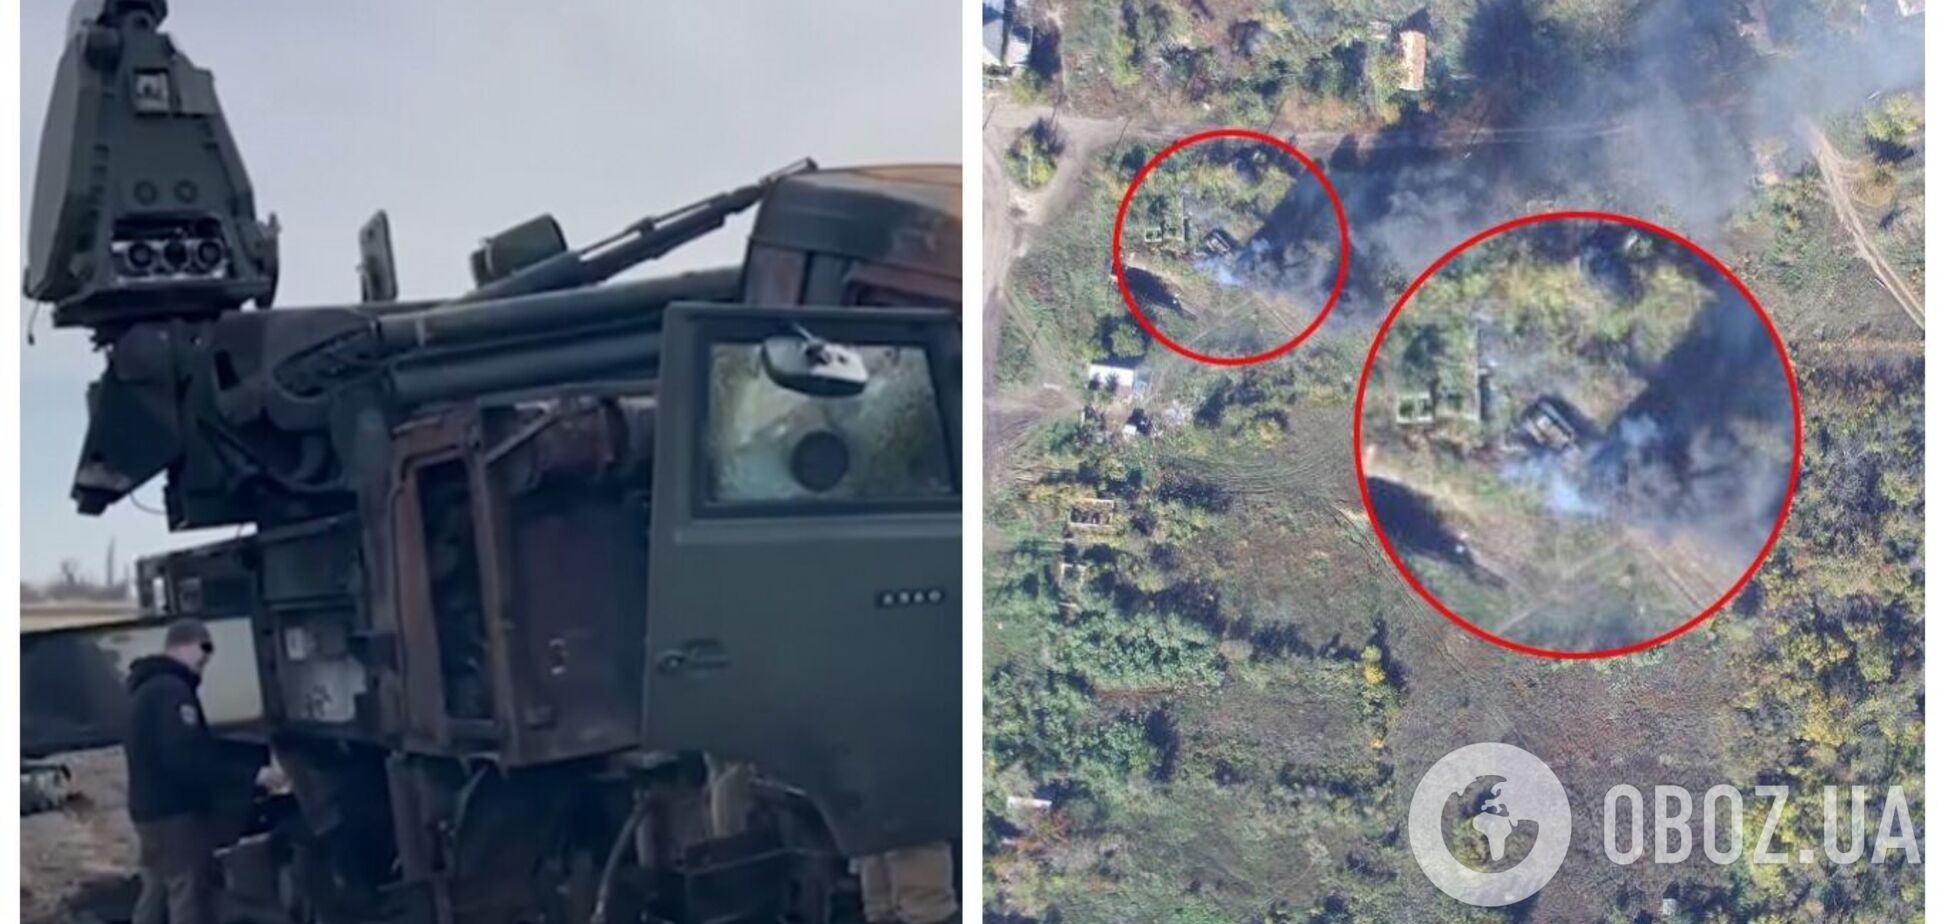 Превратили в металлолом: воины ВСУ показали кадры 'охоты' на российский 'Панцирь' и его уничтожения. Видео